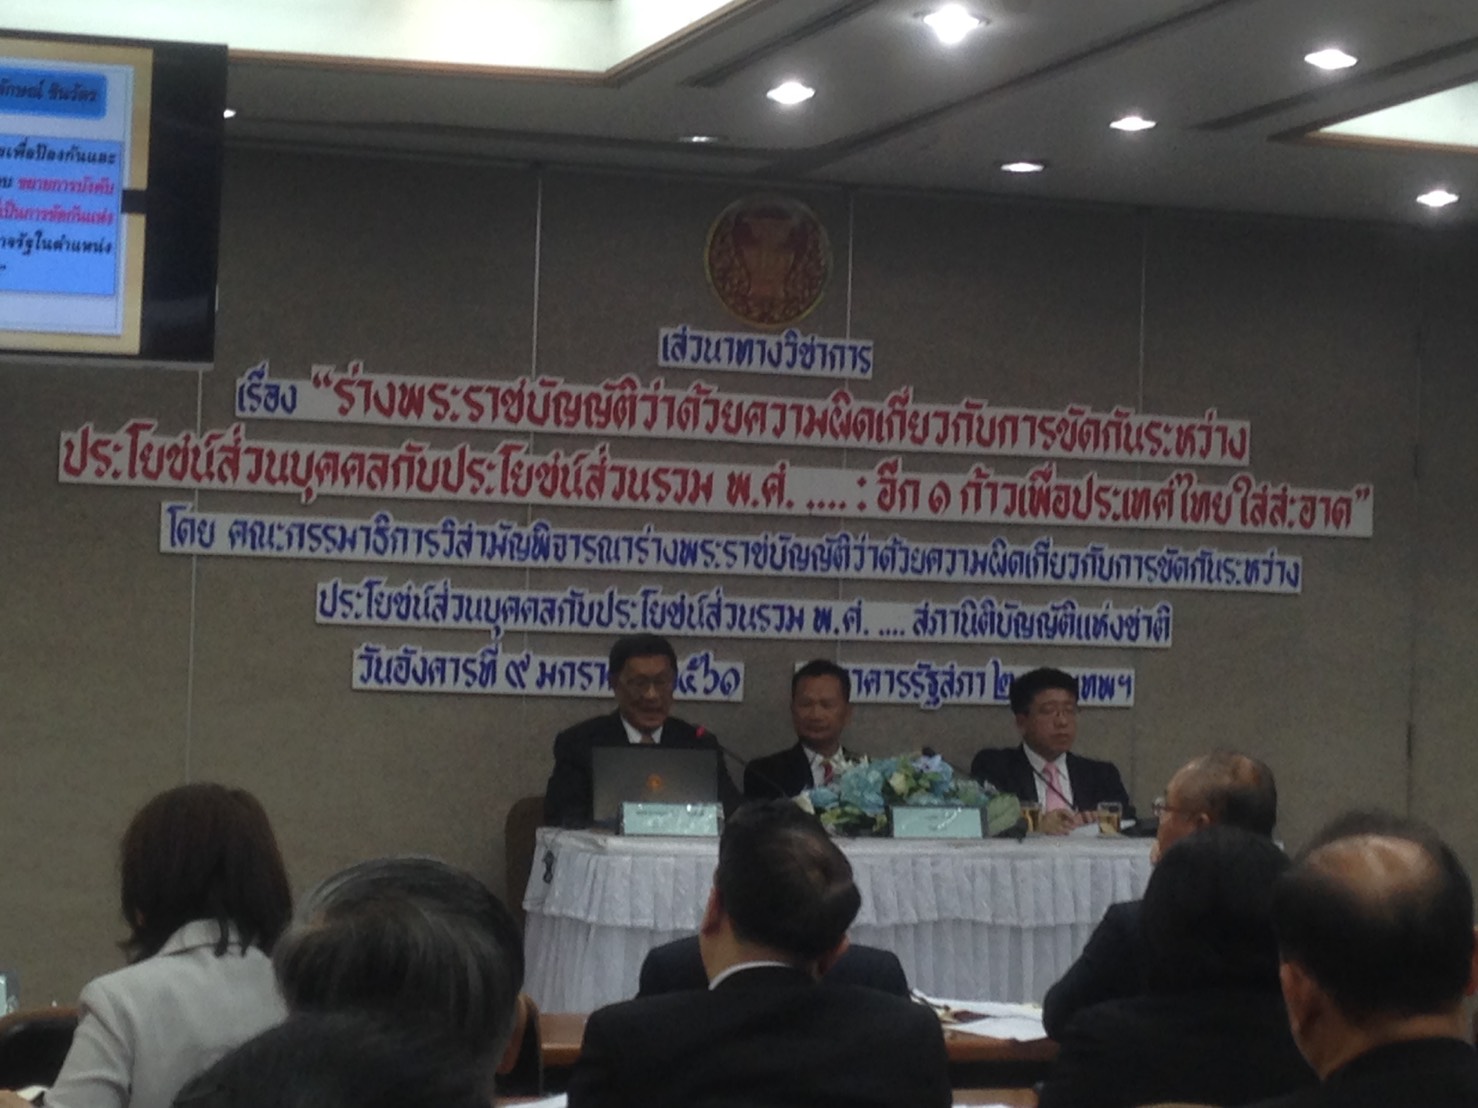 ศสส.ทร. จัดผู้แทนร่วมงาน เสวนาทางวิชาการ เรื่อง " ร่างพระราชบัญญัติว่าด้วยความผิดเกี่ยวกับการขัดกันระหว่างประโยชน์ส่วนบุคคลกับประโยชน์ส่วนรวม พ.ศ...... : อีก ๑ ก้าวเพื่อประเทศไทยใสสะอาด"